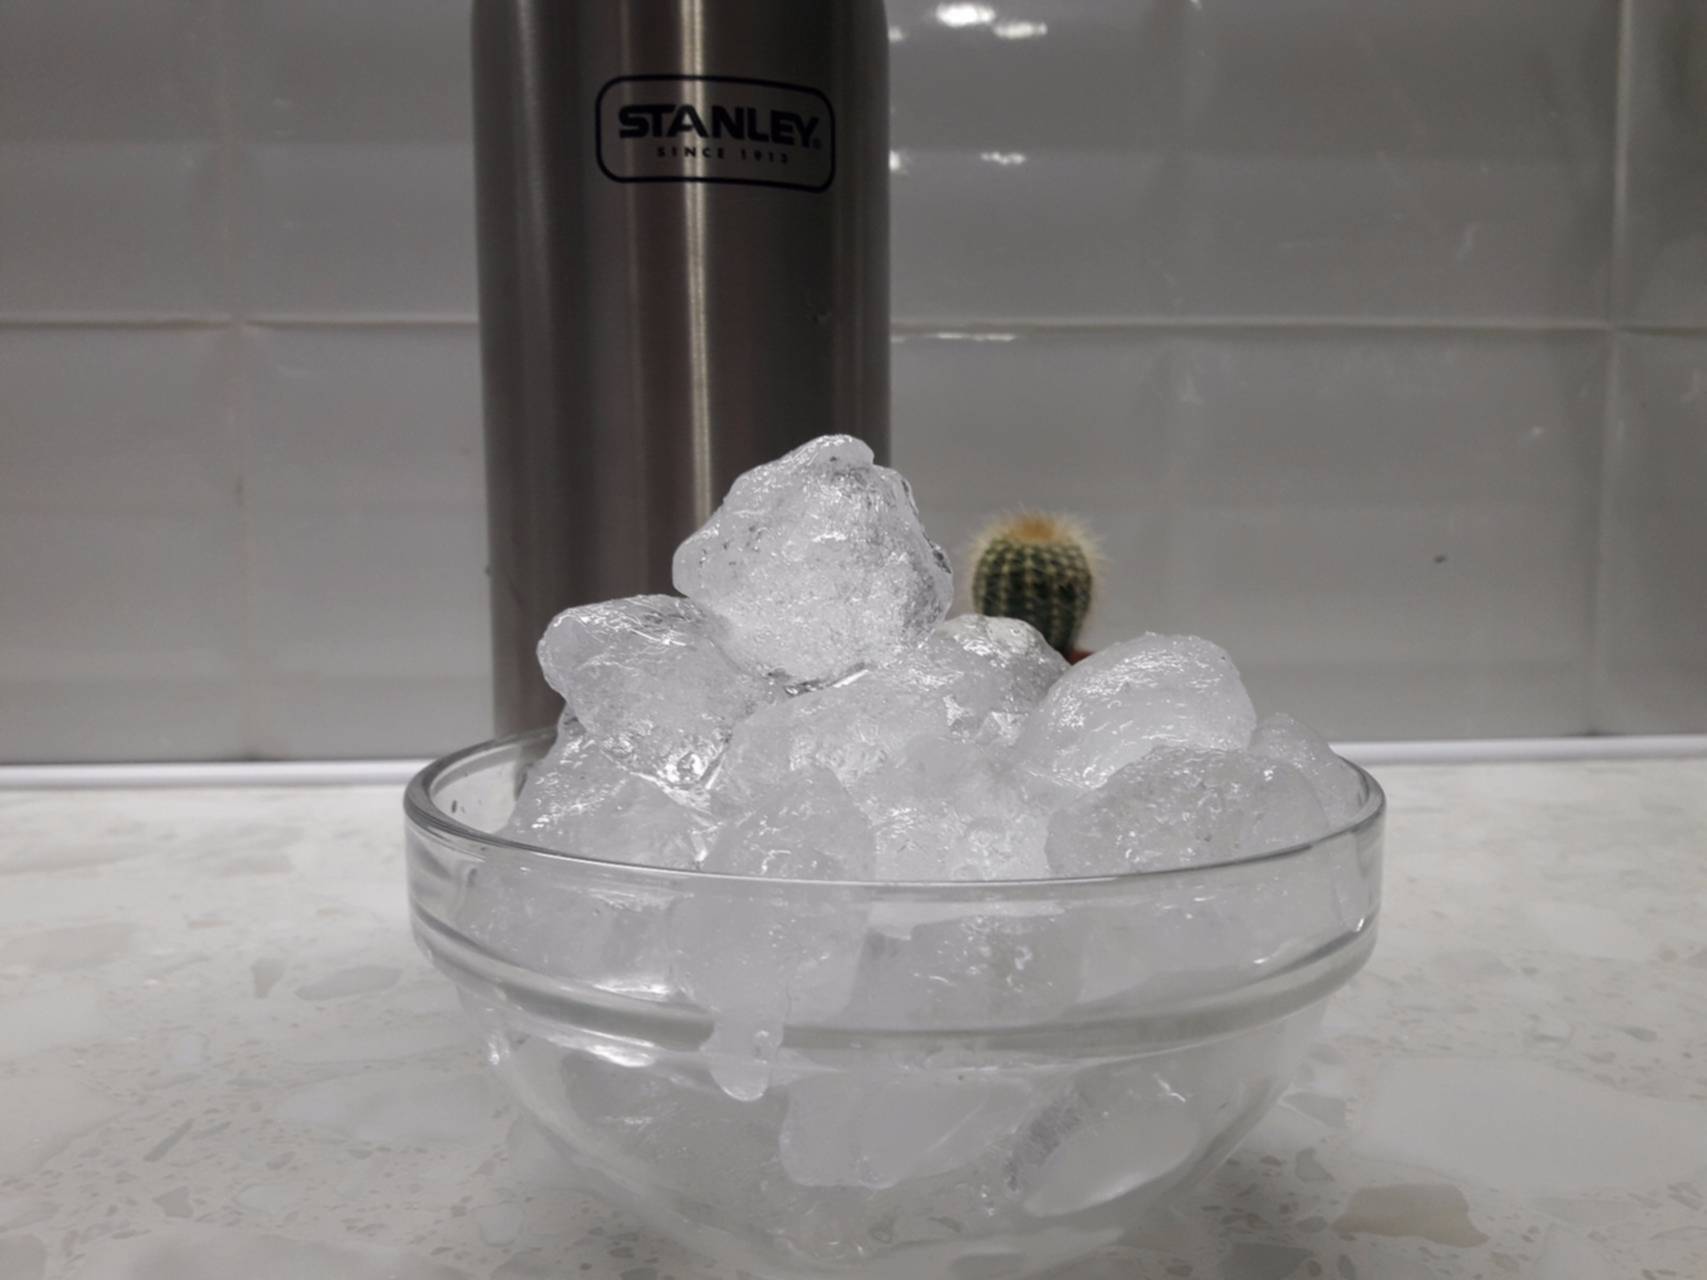 В термос с большим количеством льда. Термос для льда. Опыты со льдом. Баня со льдом в химии. Баня на льду.